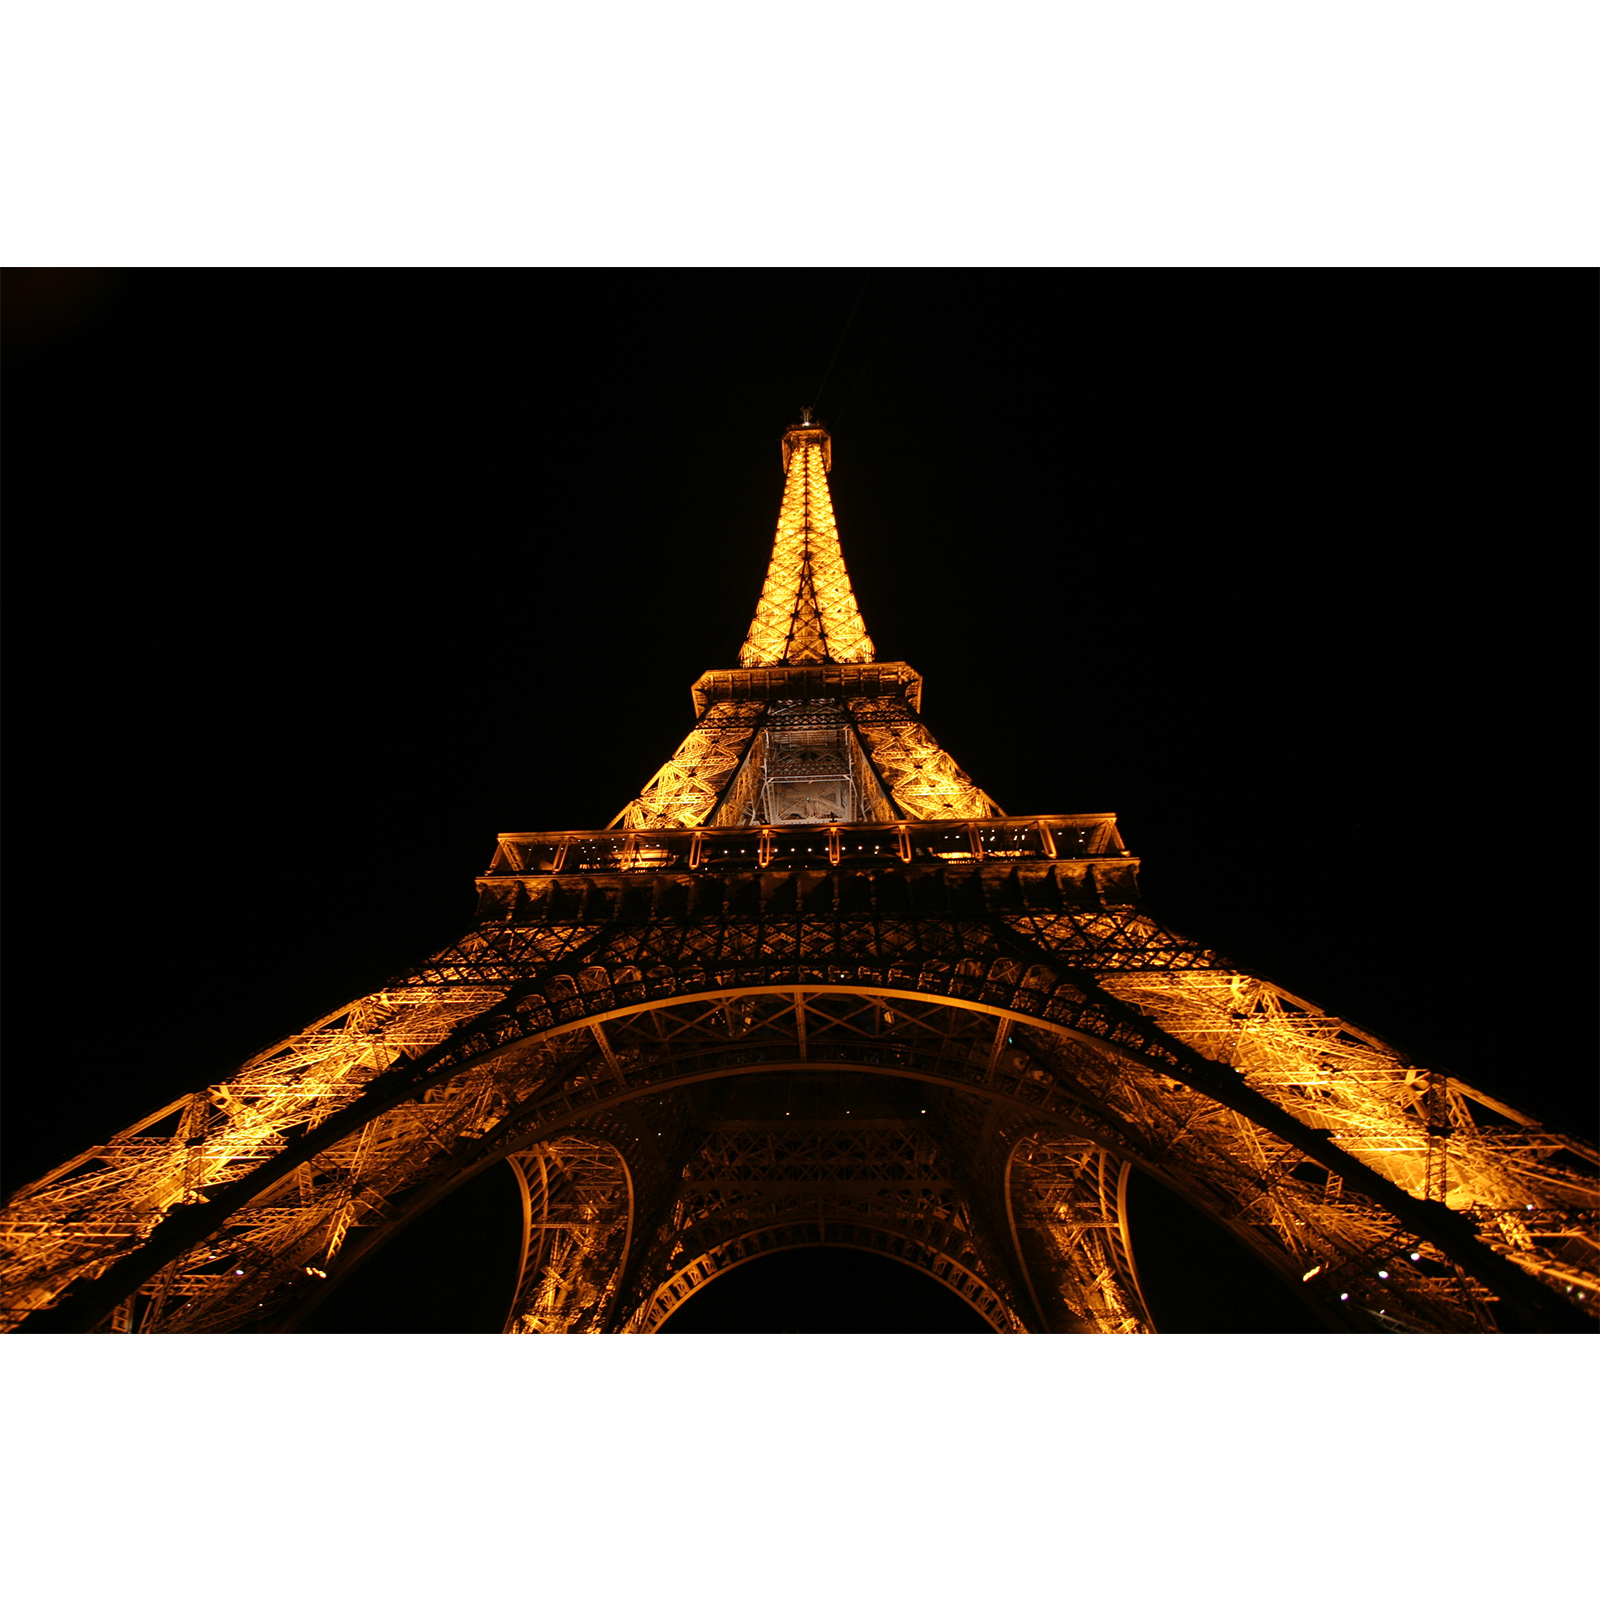 تابلو شاسی سری زیباترین عکس های جهان طرح برج ایفل کد 141